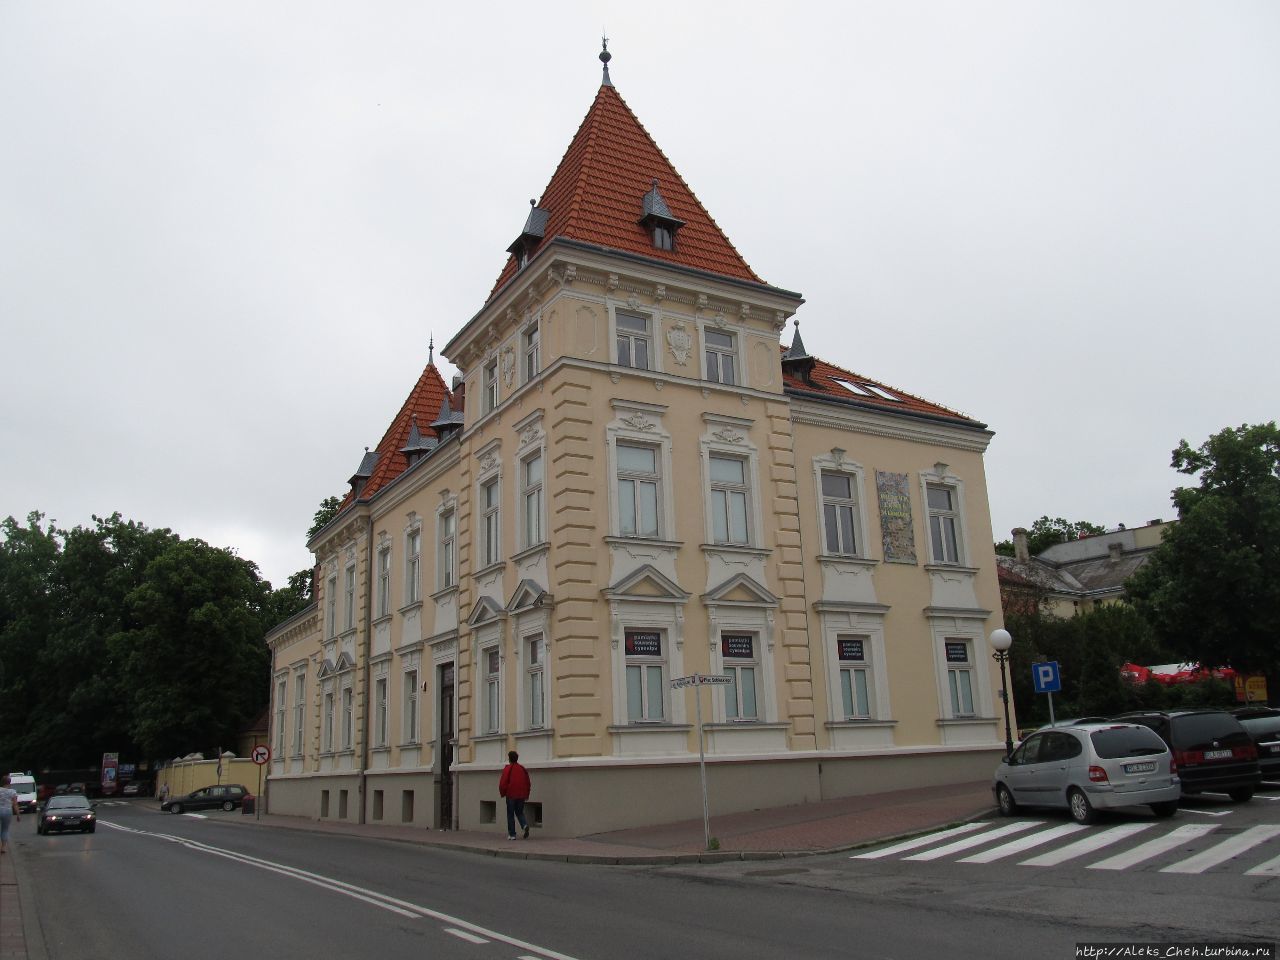 Музей истории города Ланьцут, Польша